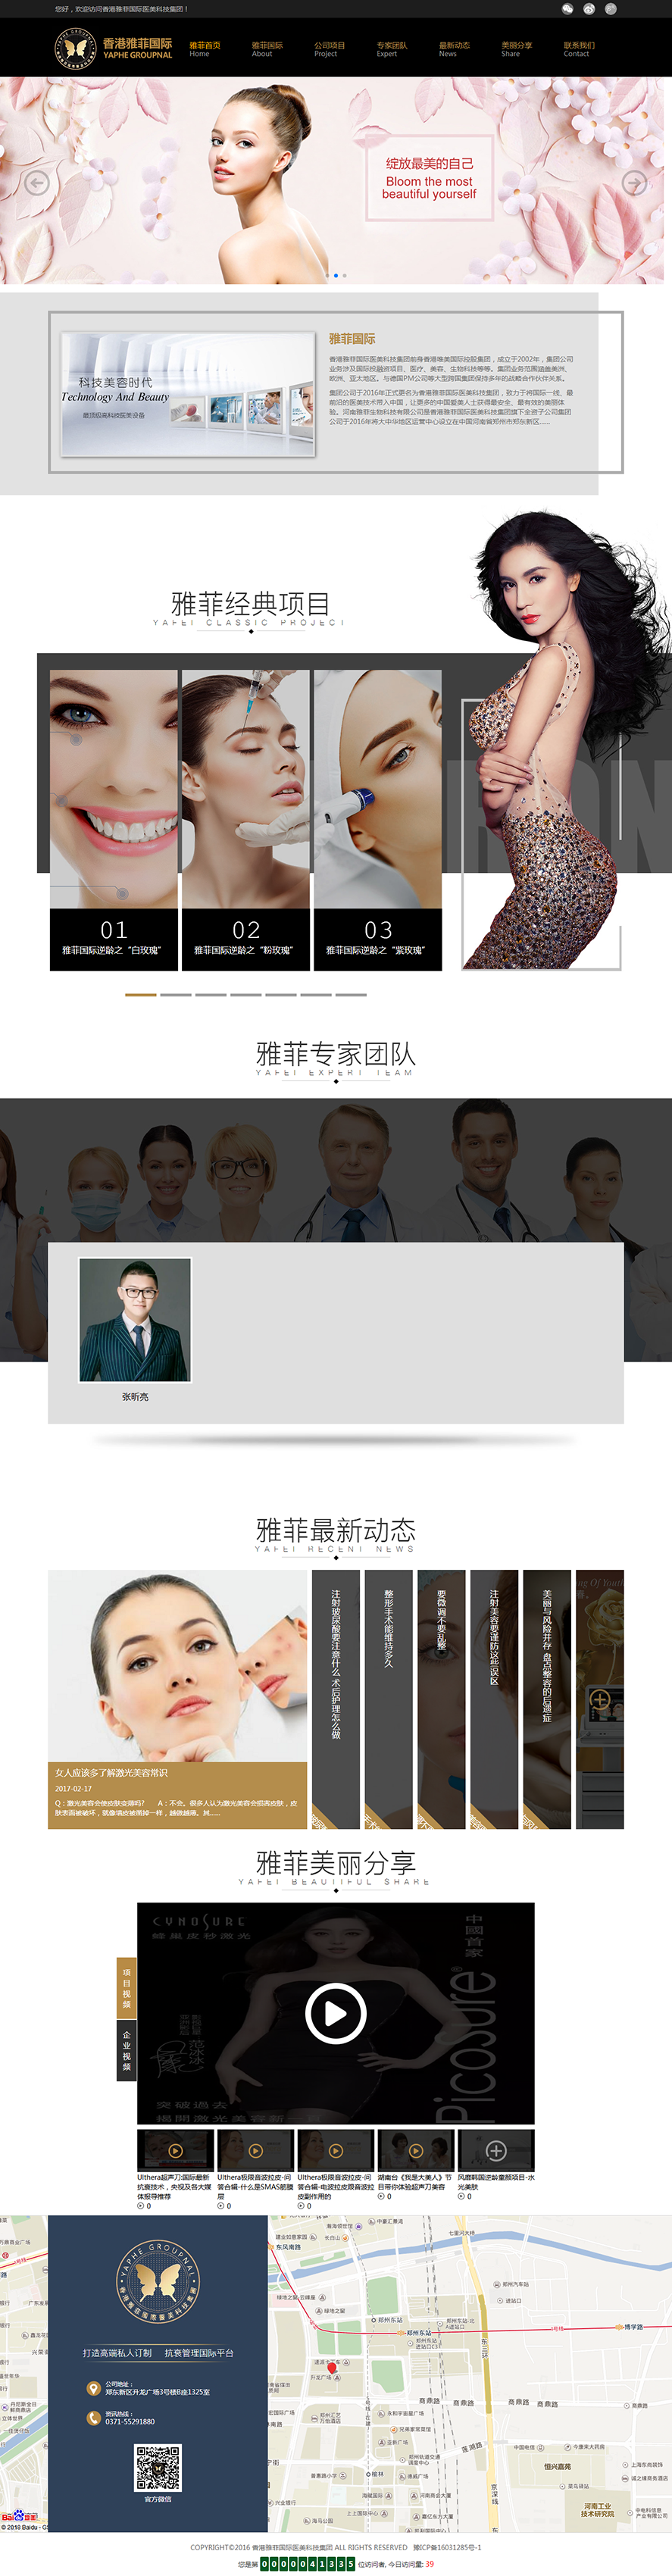 香港雅菲国际医美科技集团.png